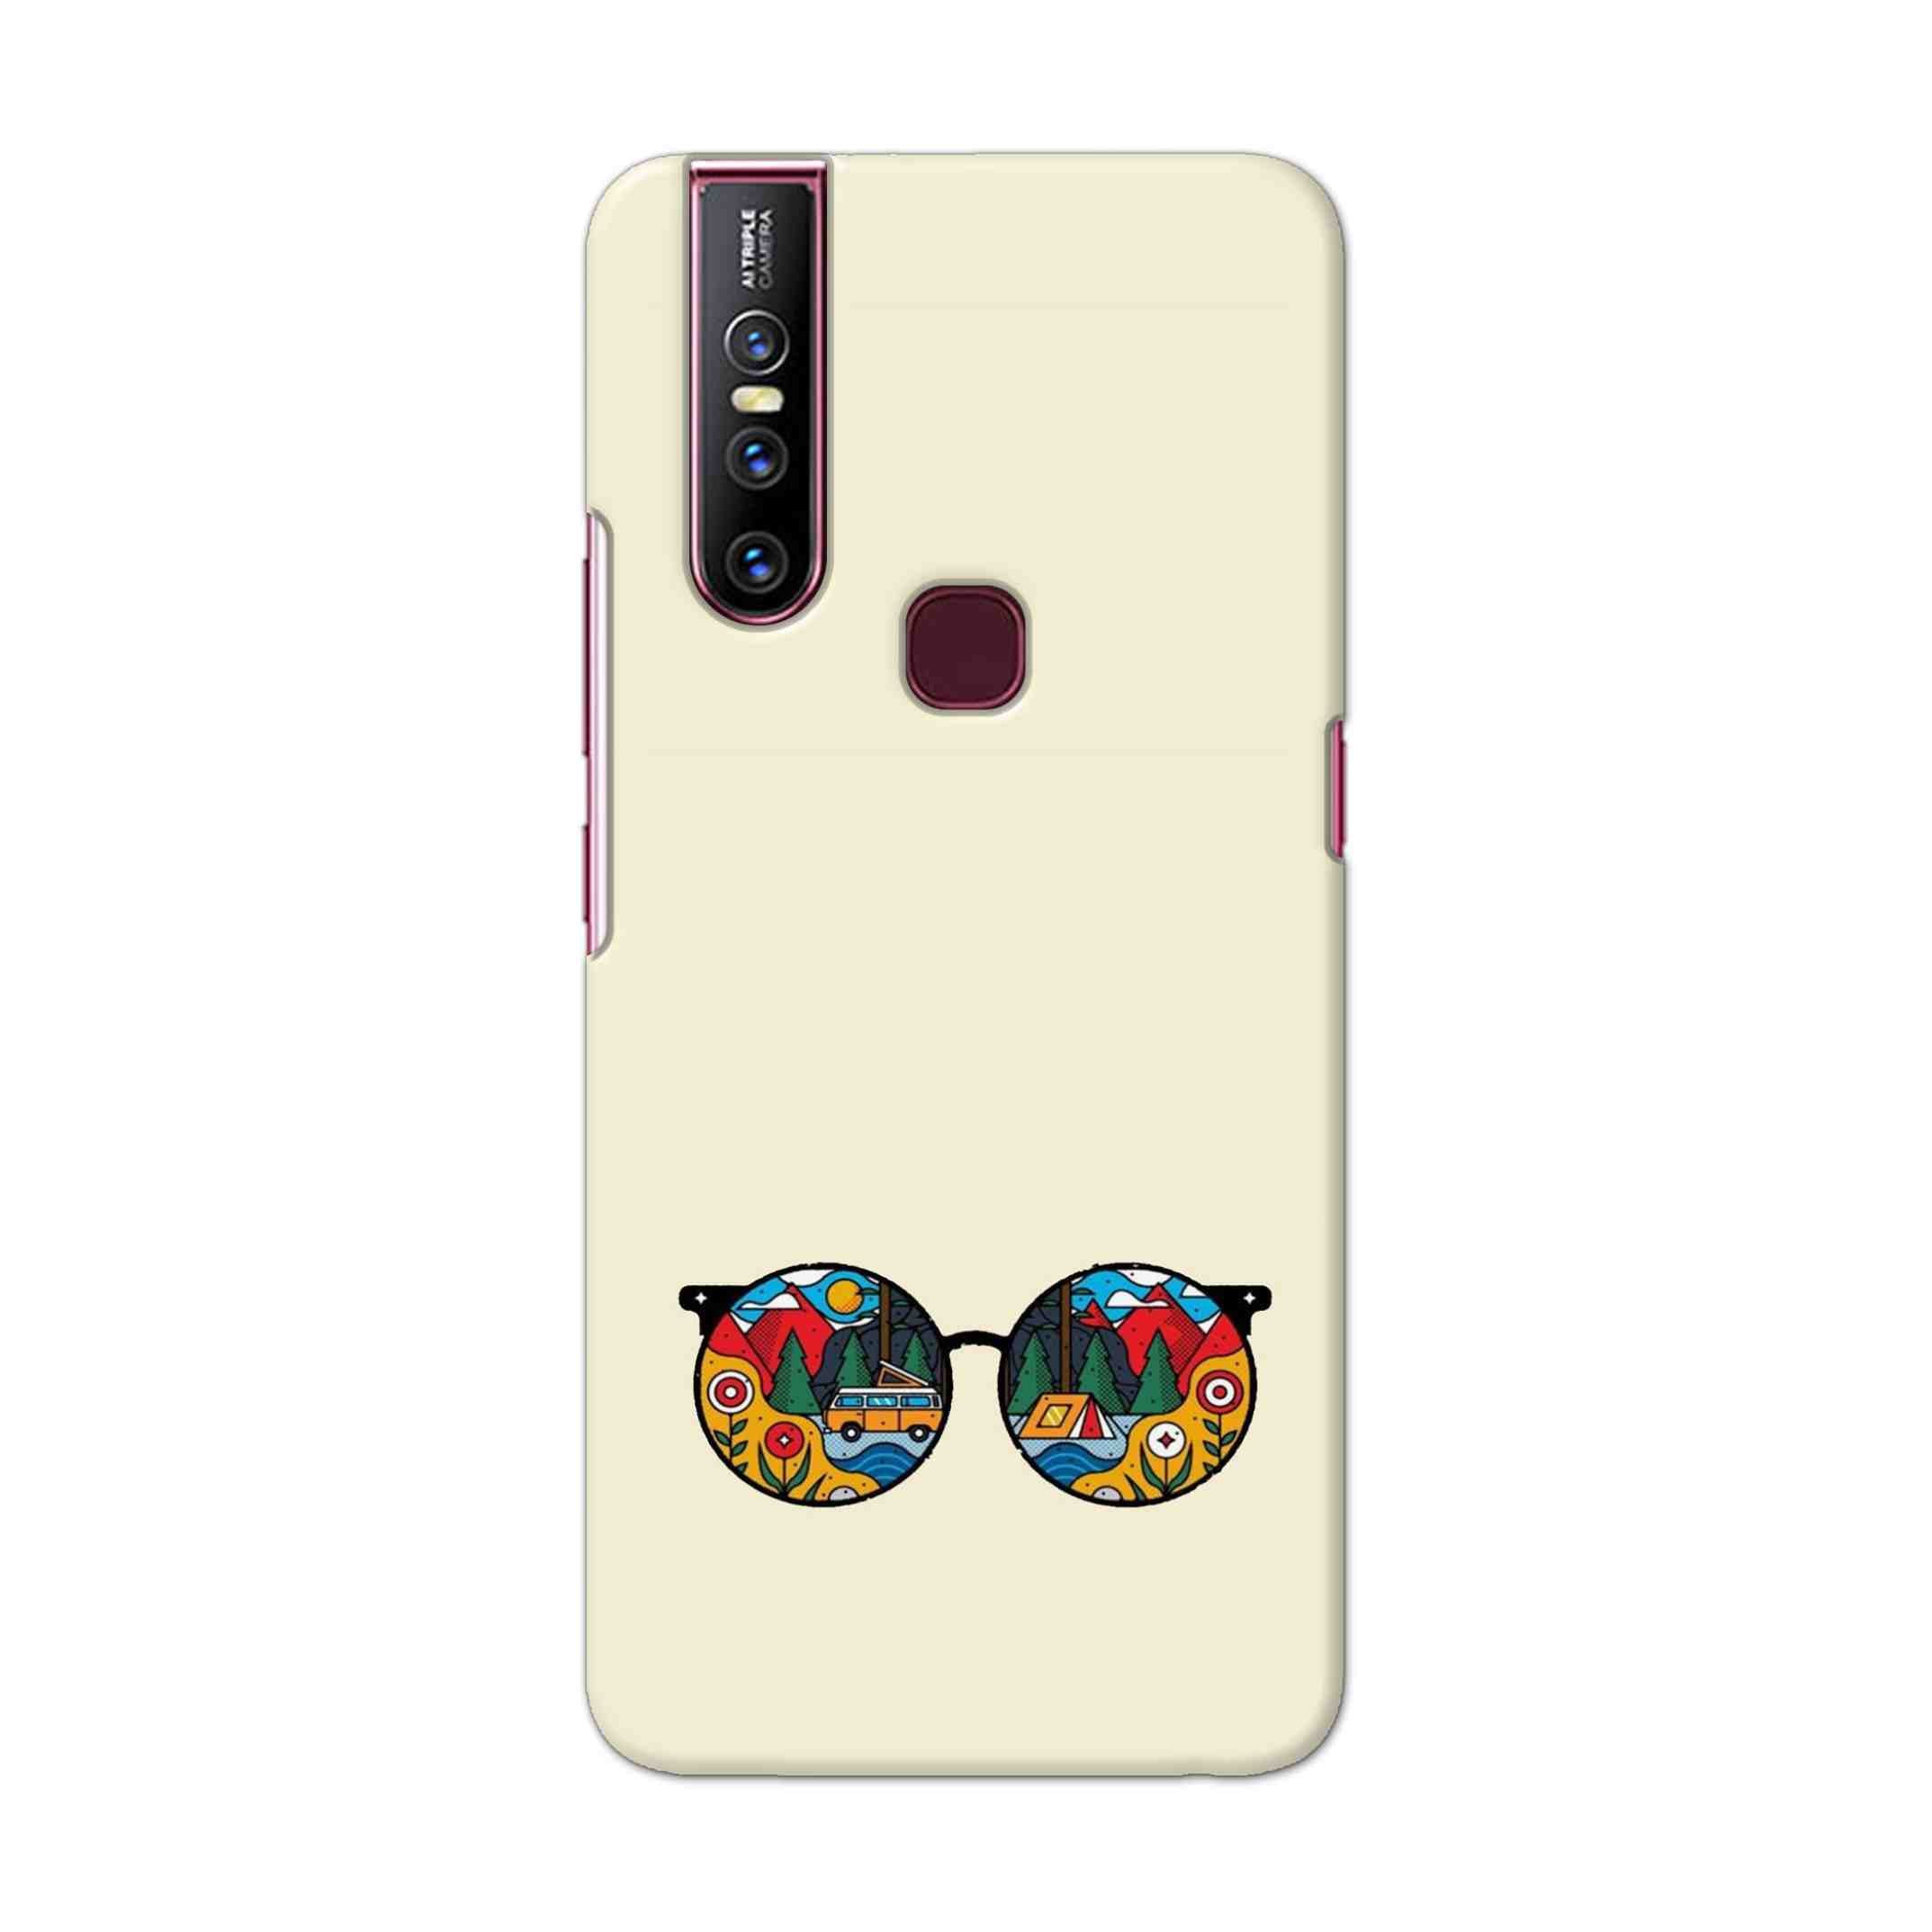 Buy Rainbow Sunglasses Hard Back Mobile Phone Case Cover For Vivo V15 Online